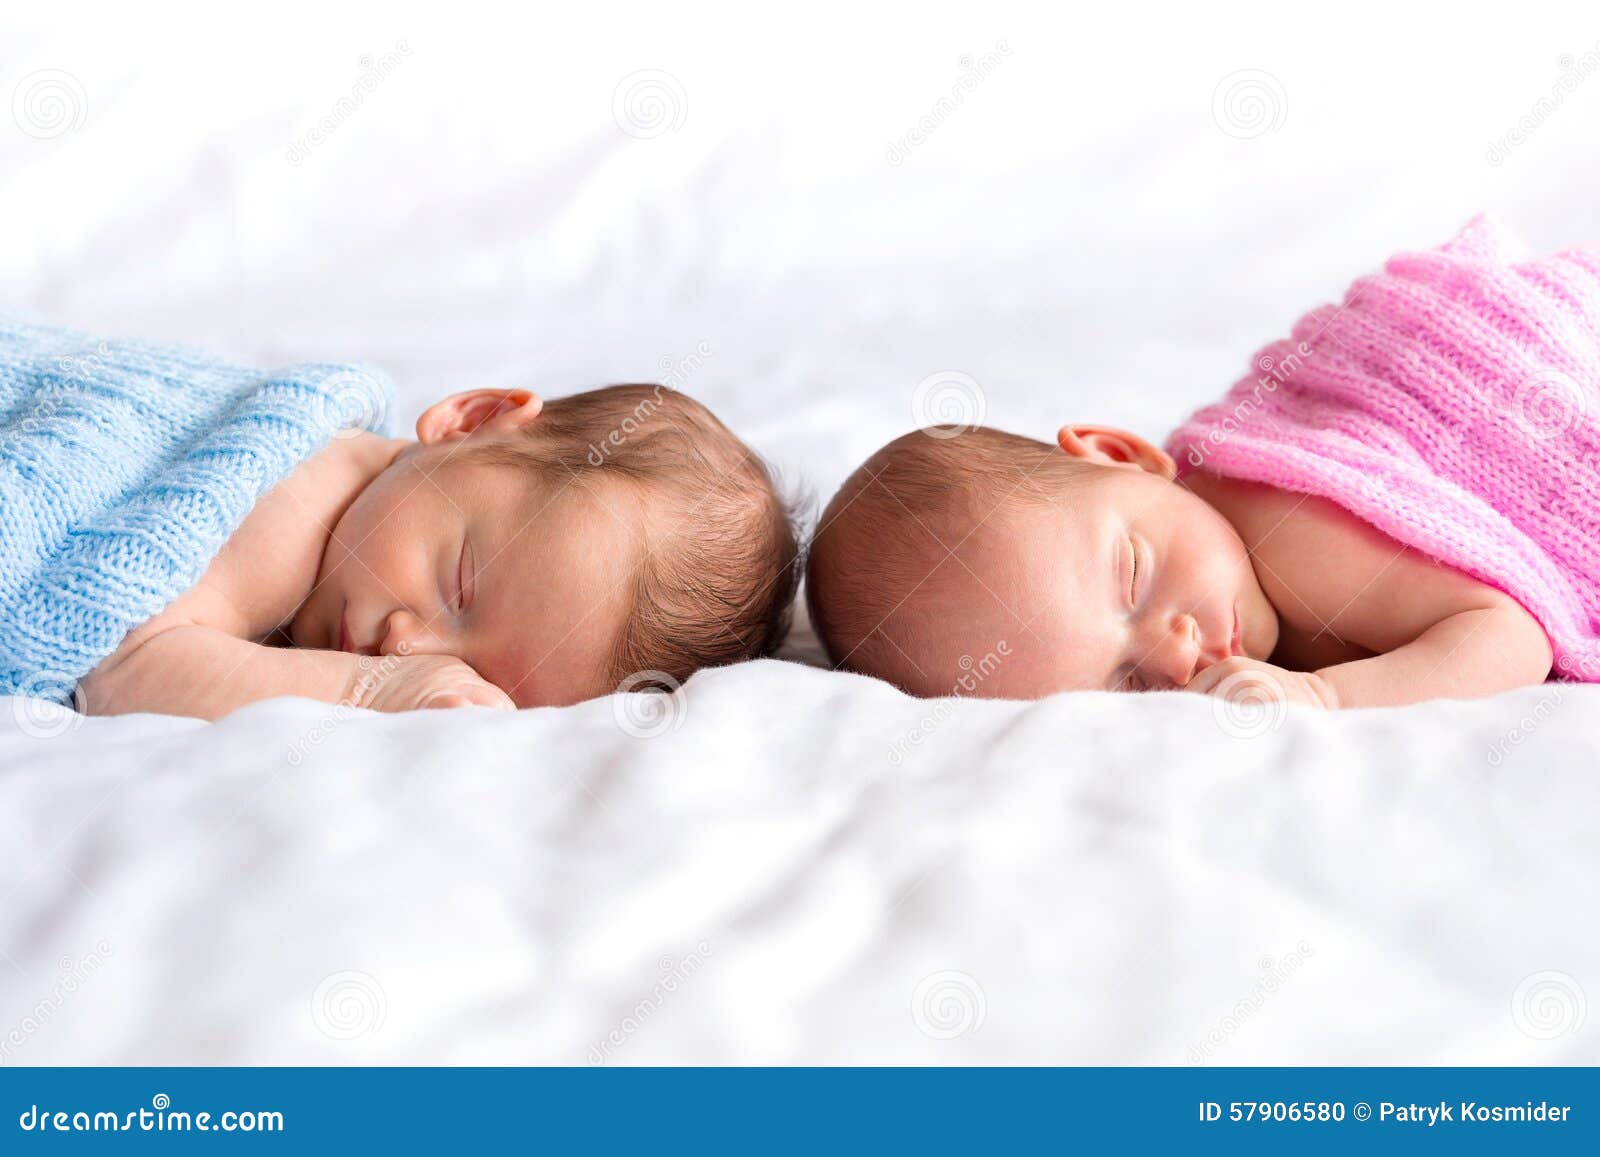 Jumeaux De Bebe Garcon Et De Fille Dans Le Lit Photo Stock Image Du Lifestyle Bati